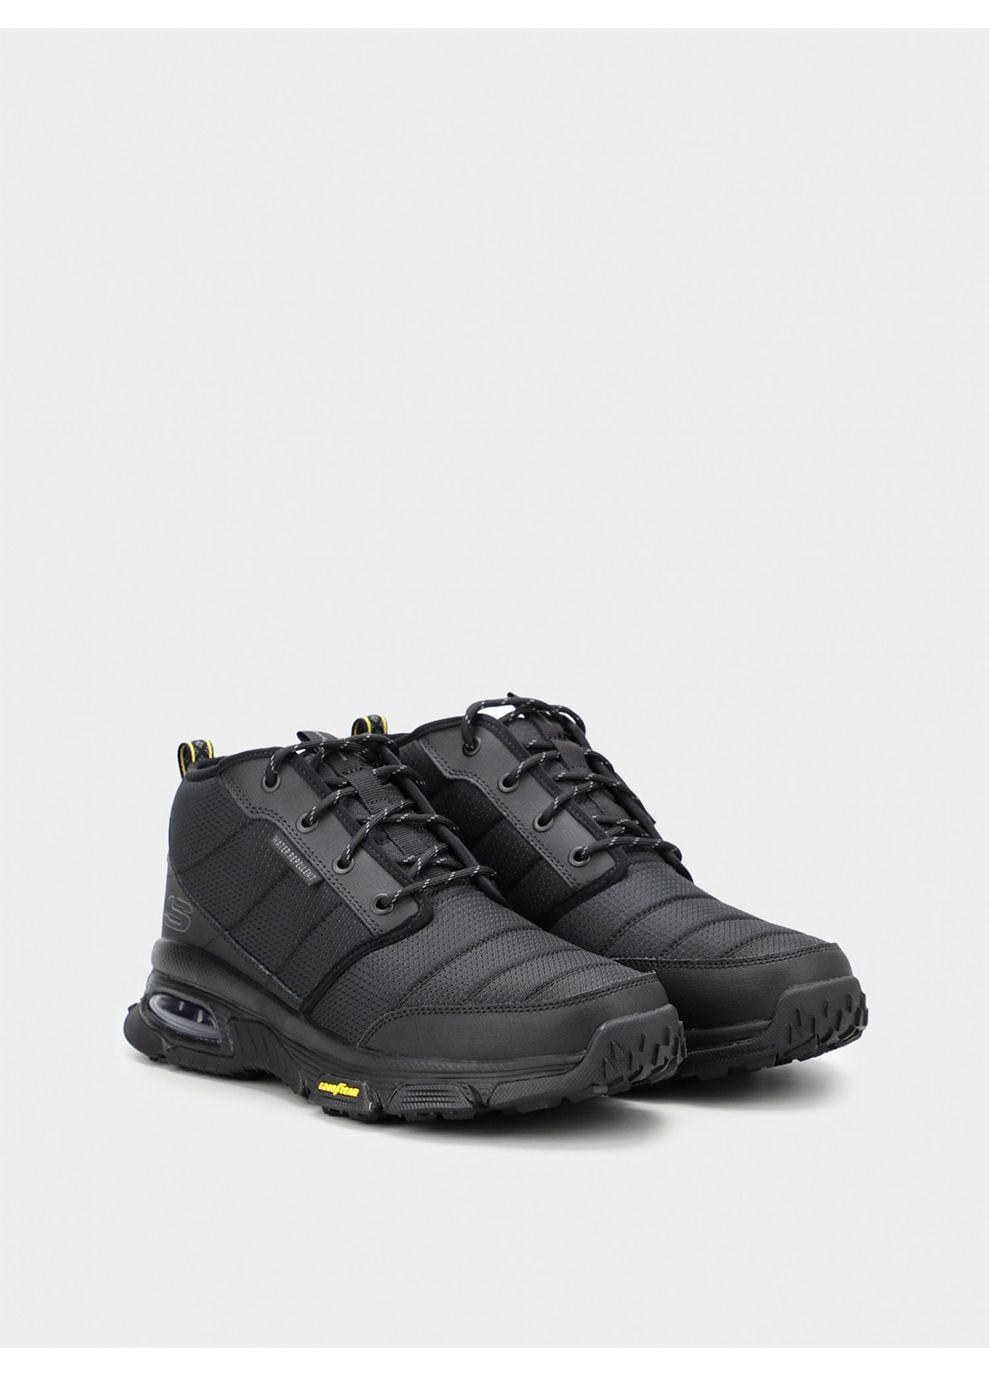 Черные осенние мужские ботинки 237317 bbk черный Skechers